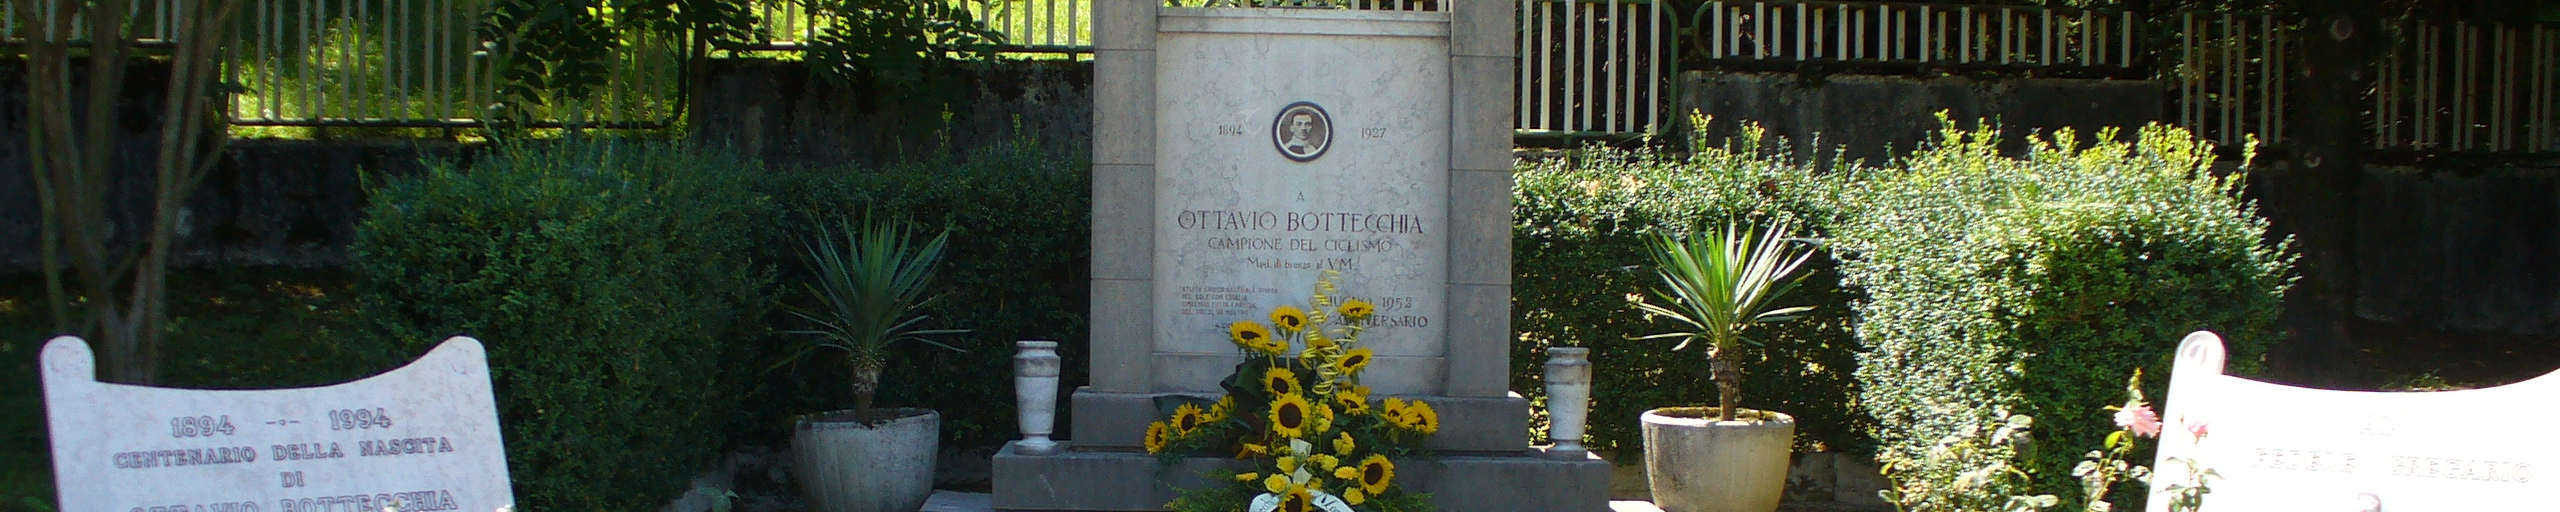 Monumento al campione del ciclismo OTTAVIO BOTTECCHIA